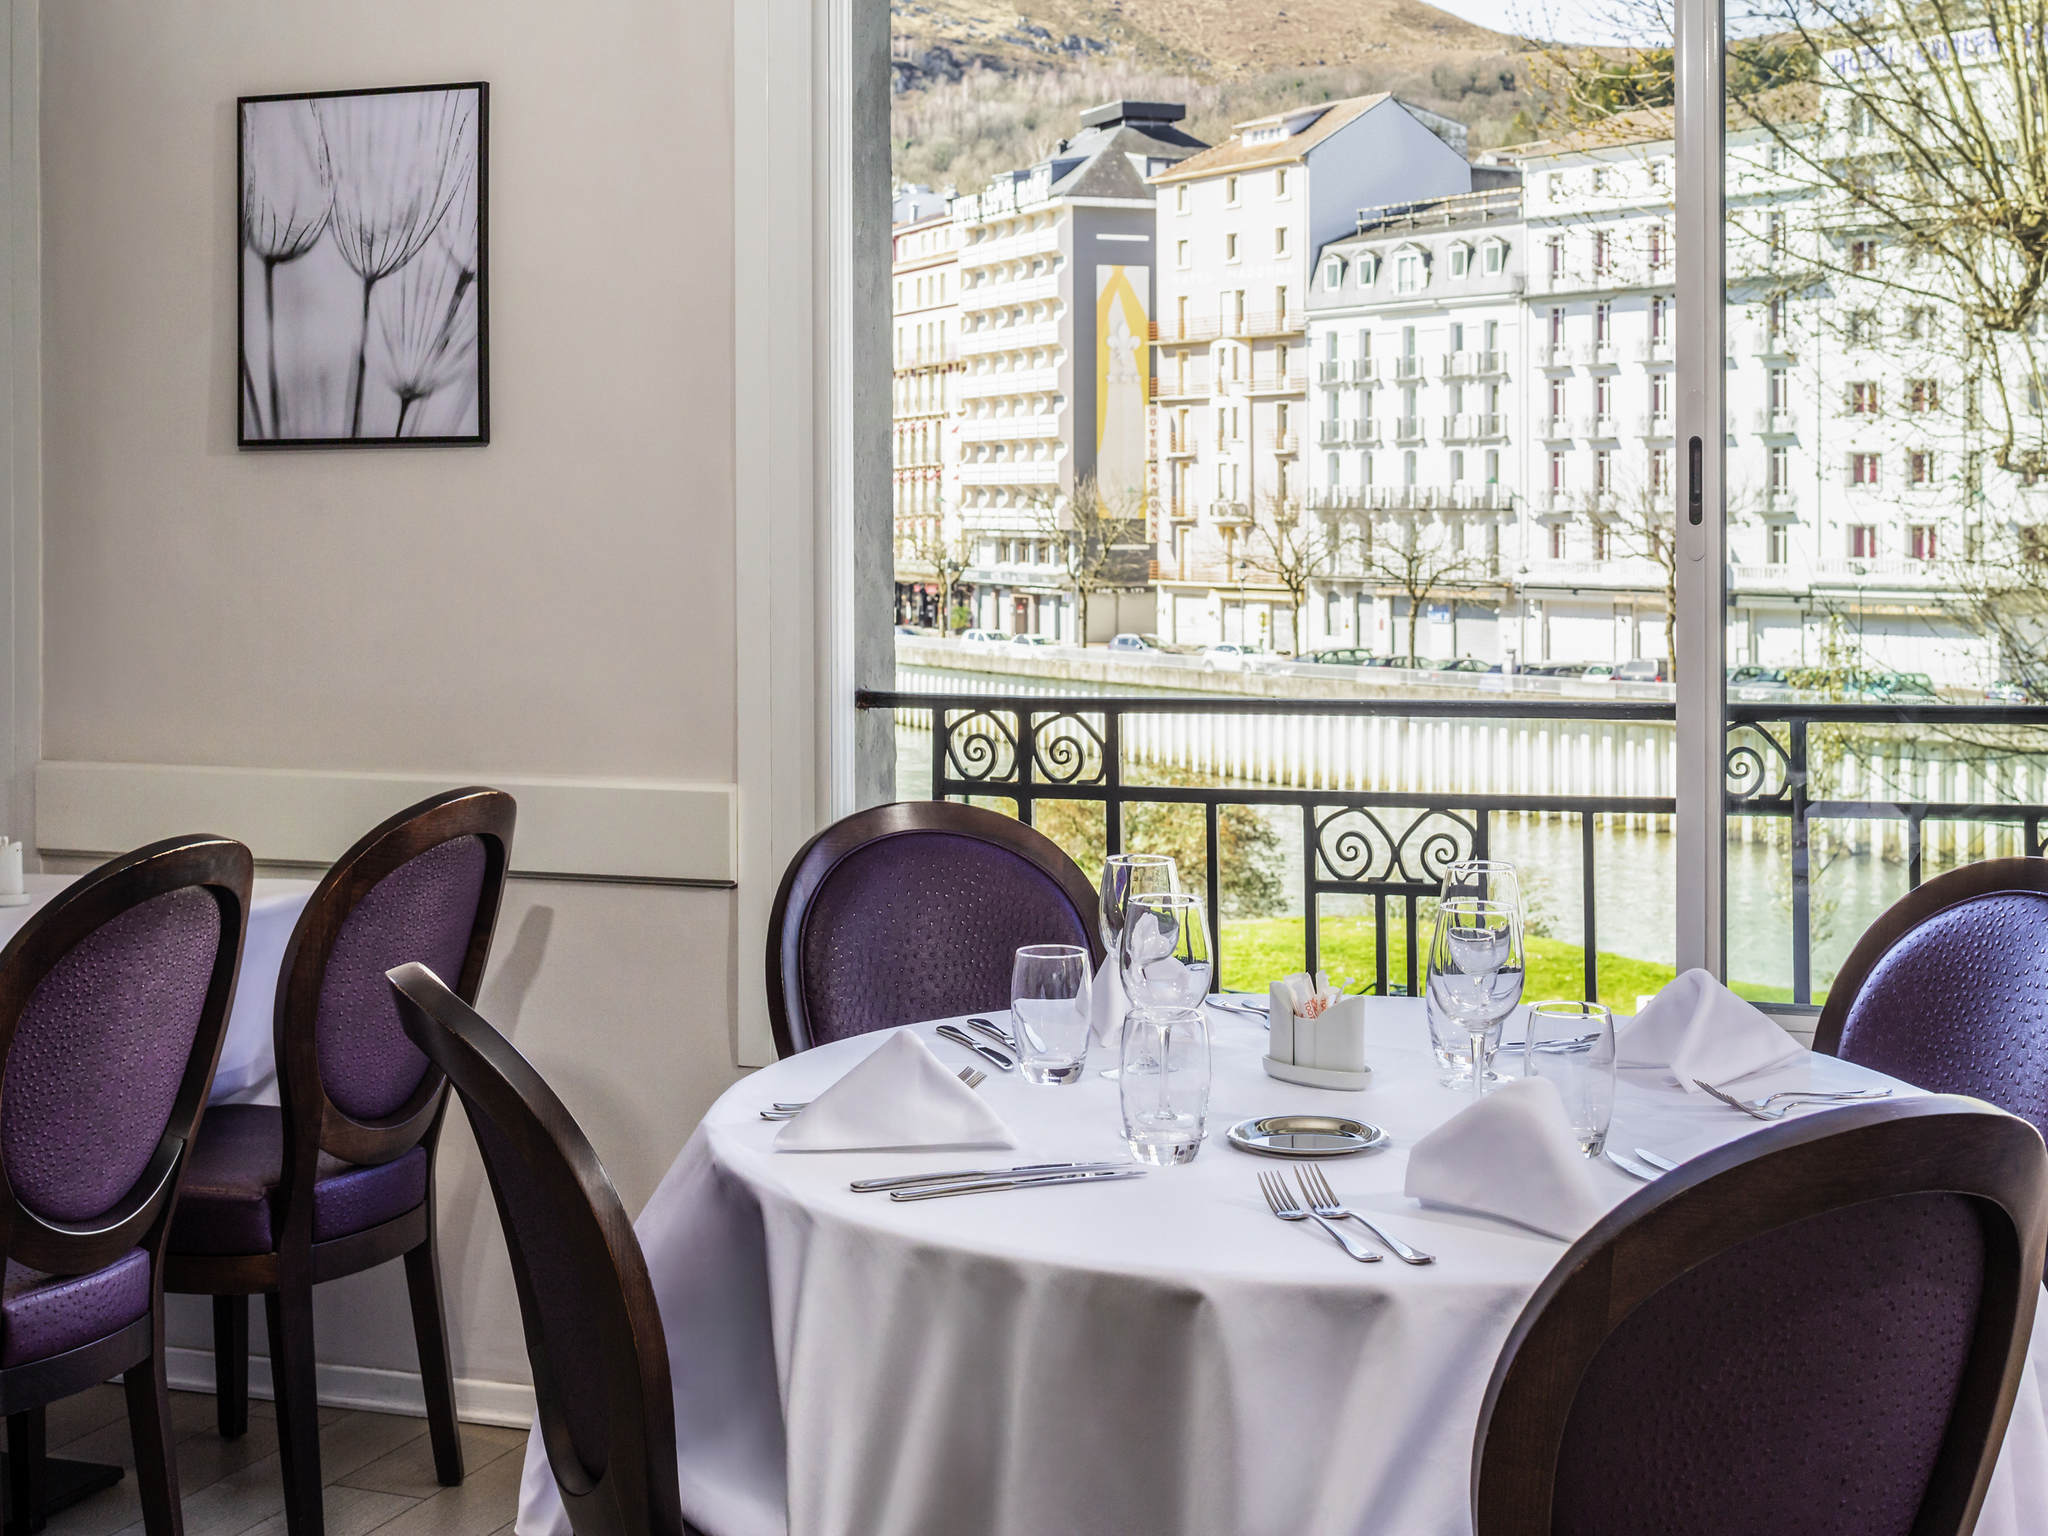 Table du restaurant pris en photo par Antoine Heusse, pour présenter le restaurant sur les sites de réservation en ligne.